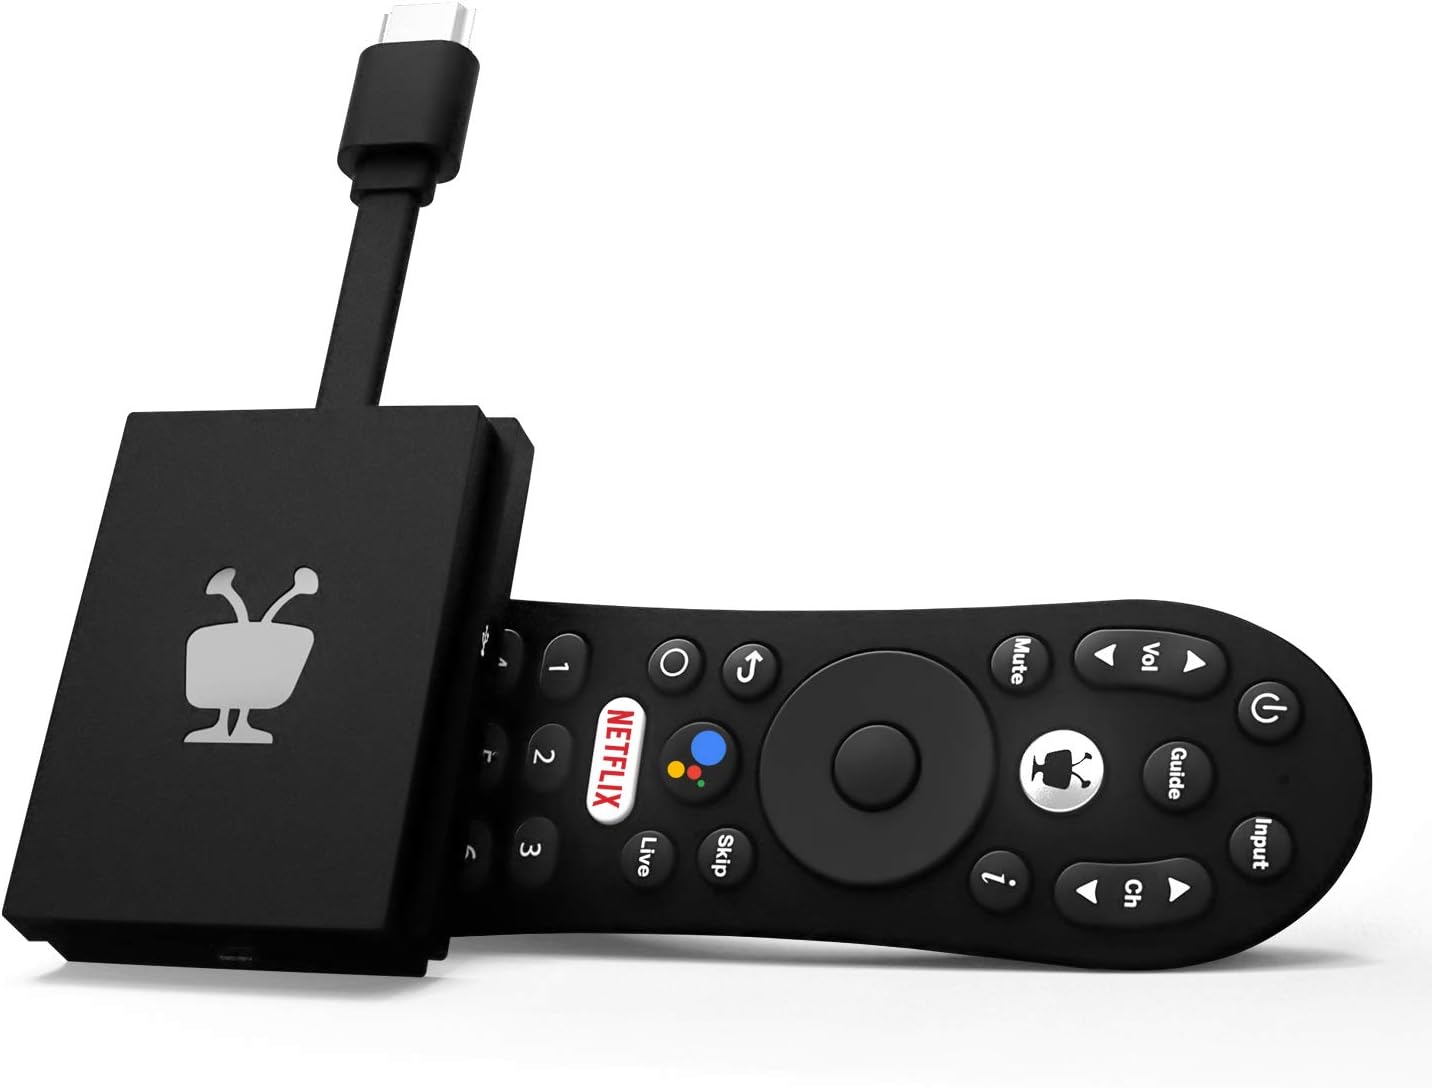 Google Chromecast With Google TV 4K - Control de Voz - Luegopago